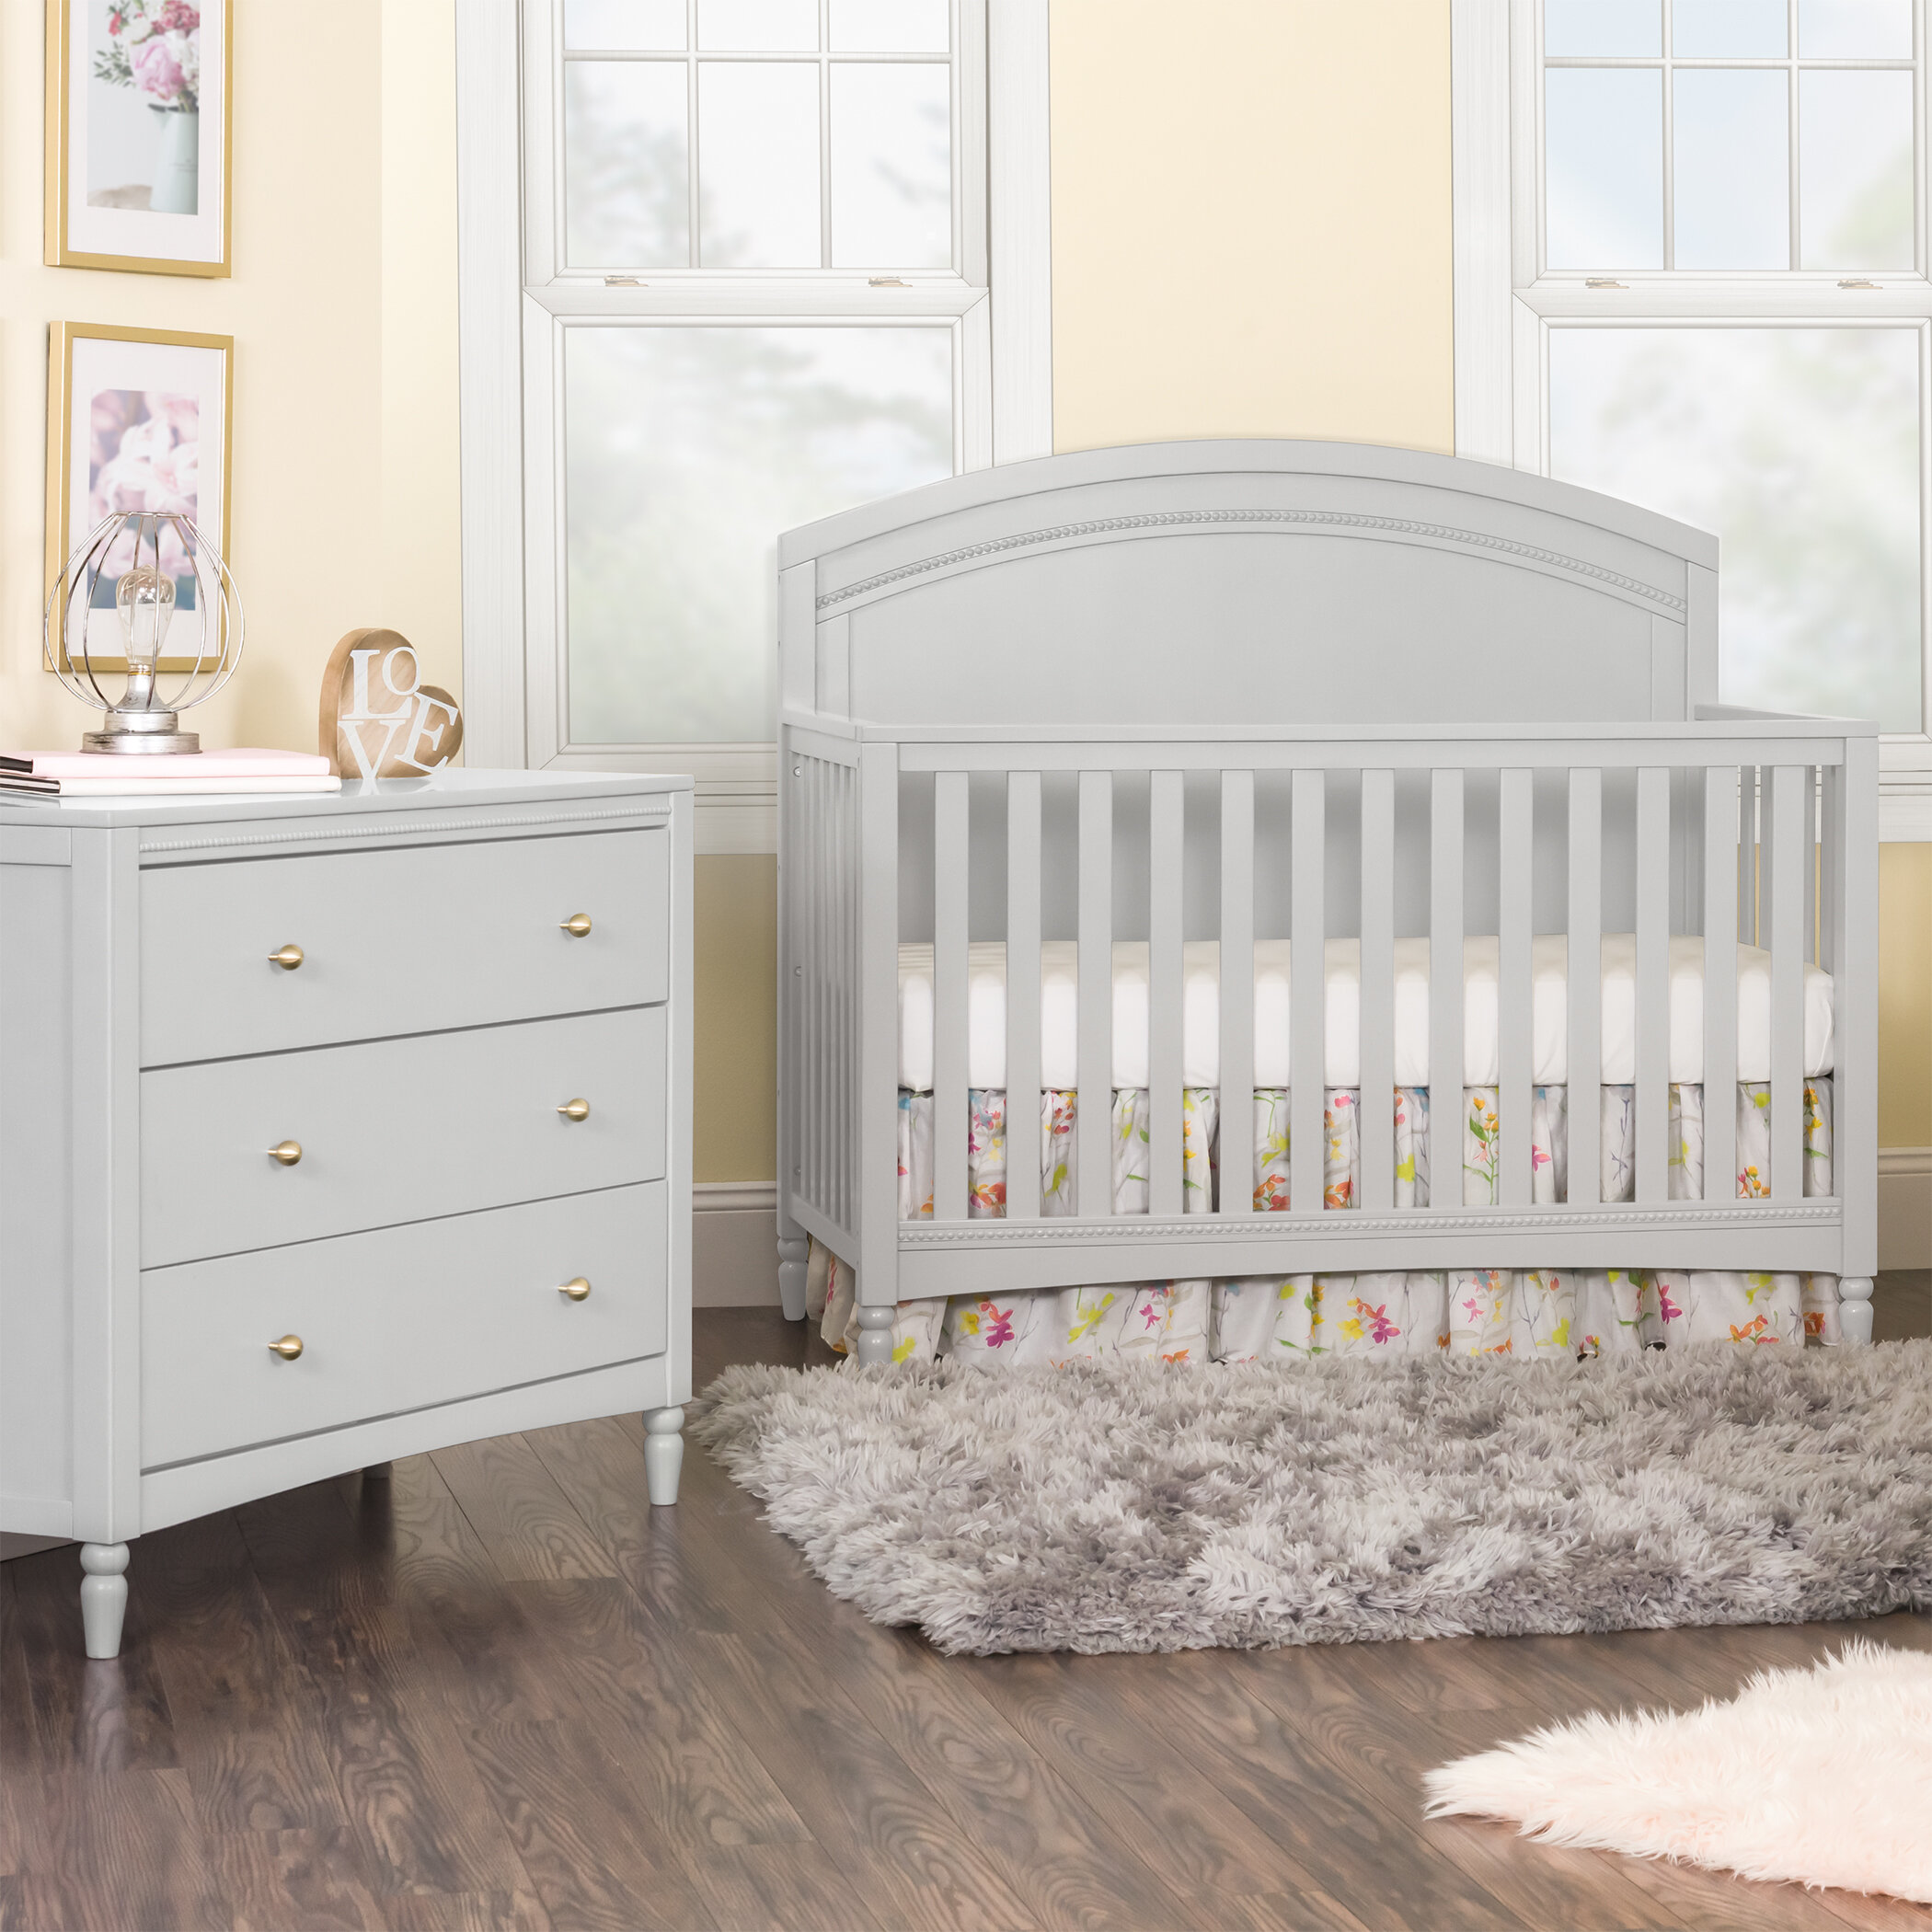 child craft baby crib